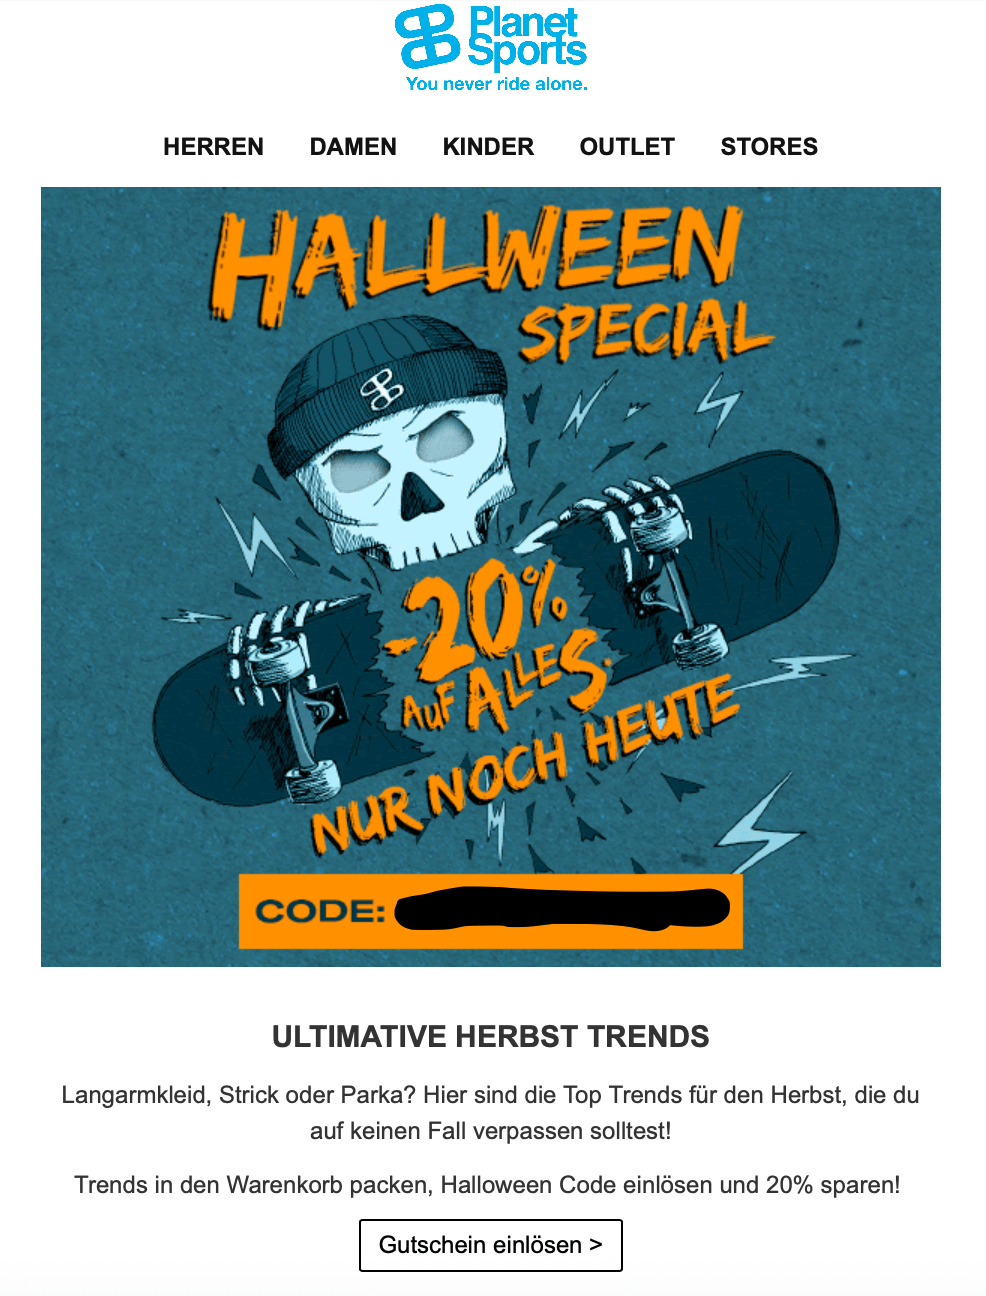 E-Commerce Newsletter im Halloween-Look